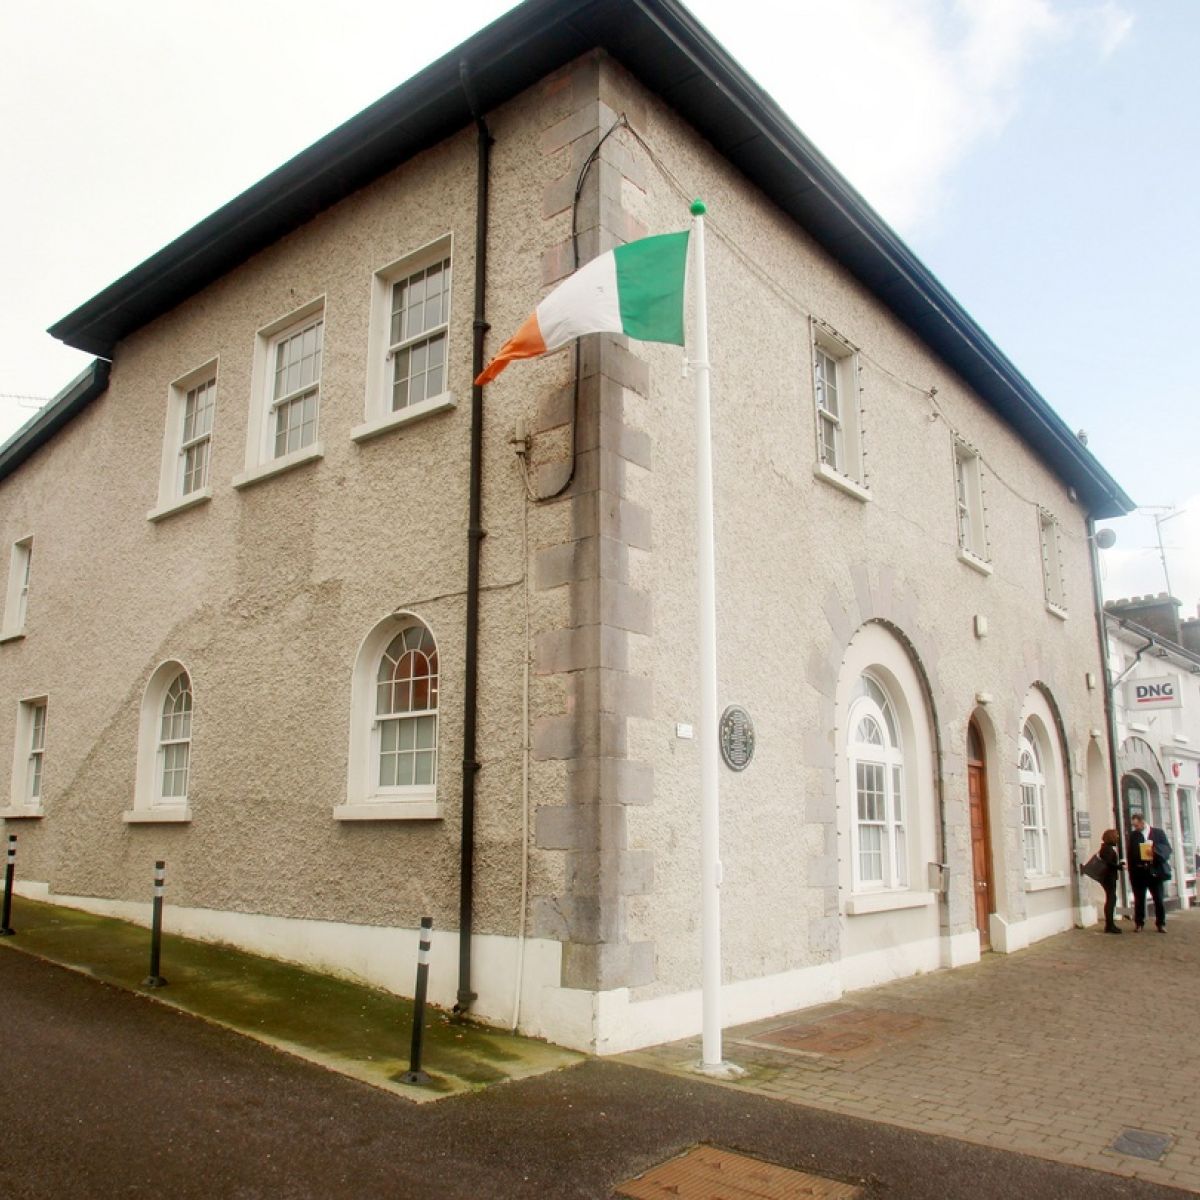 Cavan, Ireland Parties | Eventbrite